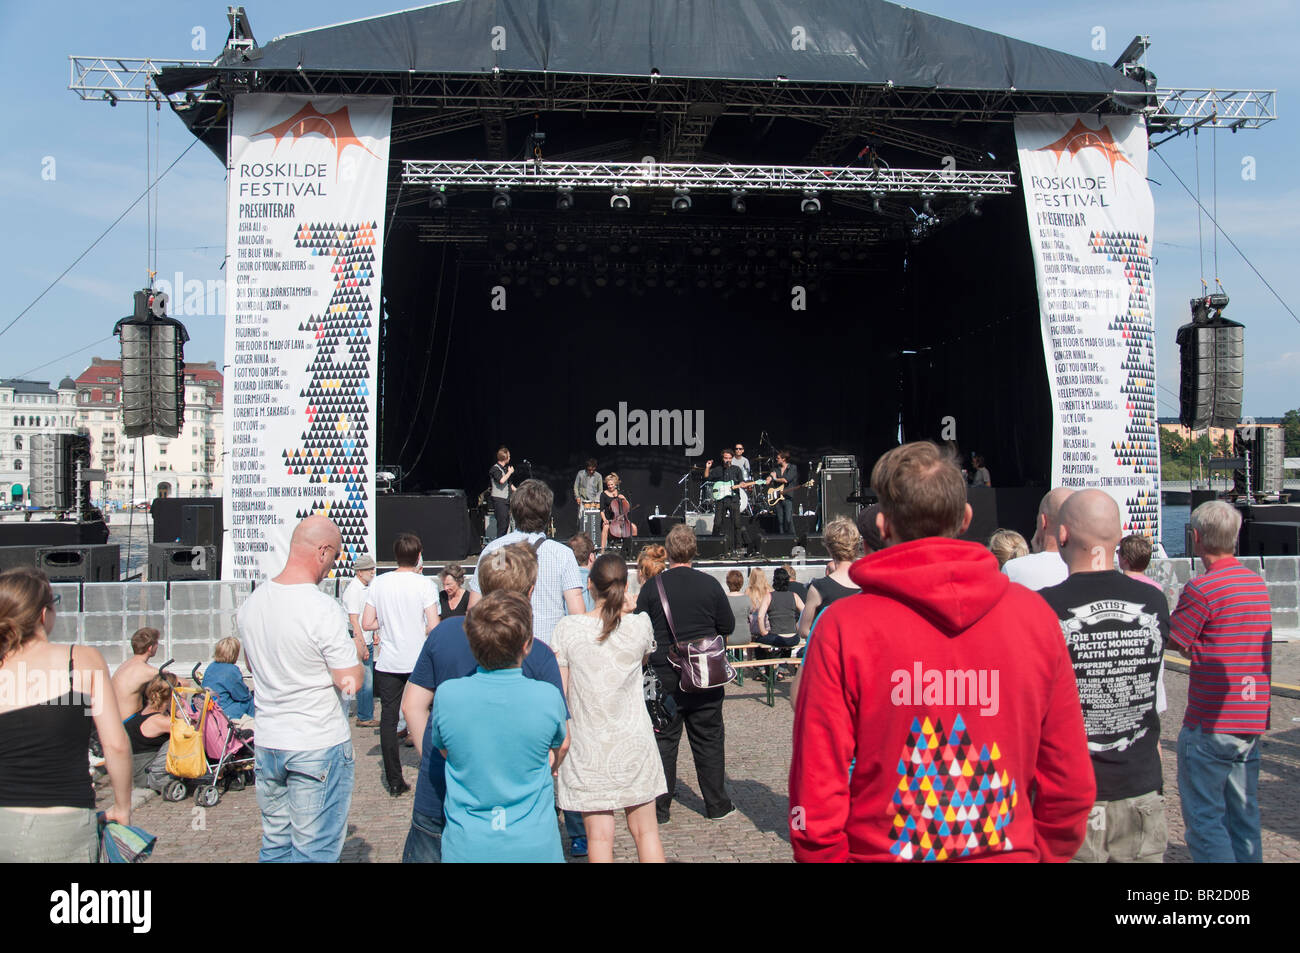 Les personnes bénéficiant de la musique en direct pendant le Festival de la Culture de Stockholm qui a eu lieu à Stockholm, Suède. Banque D'Images